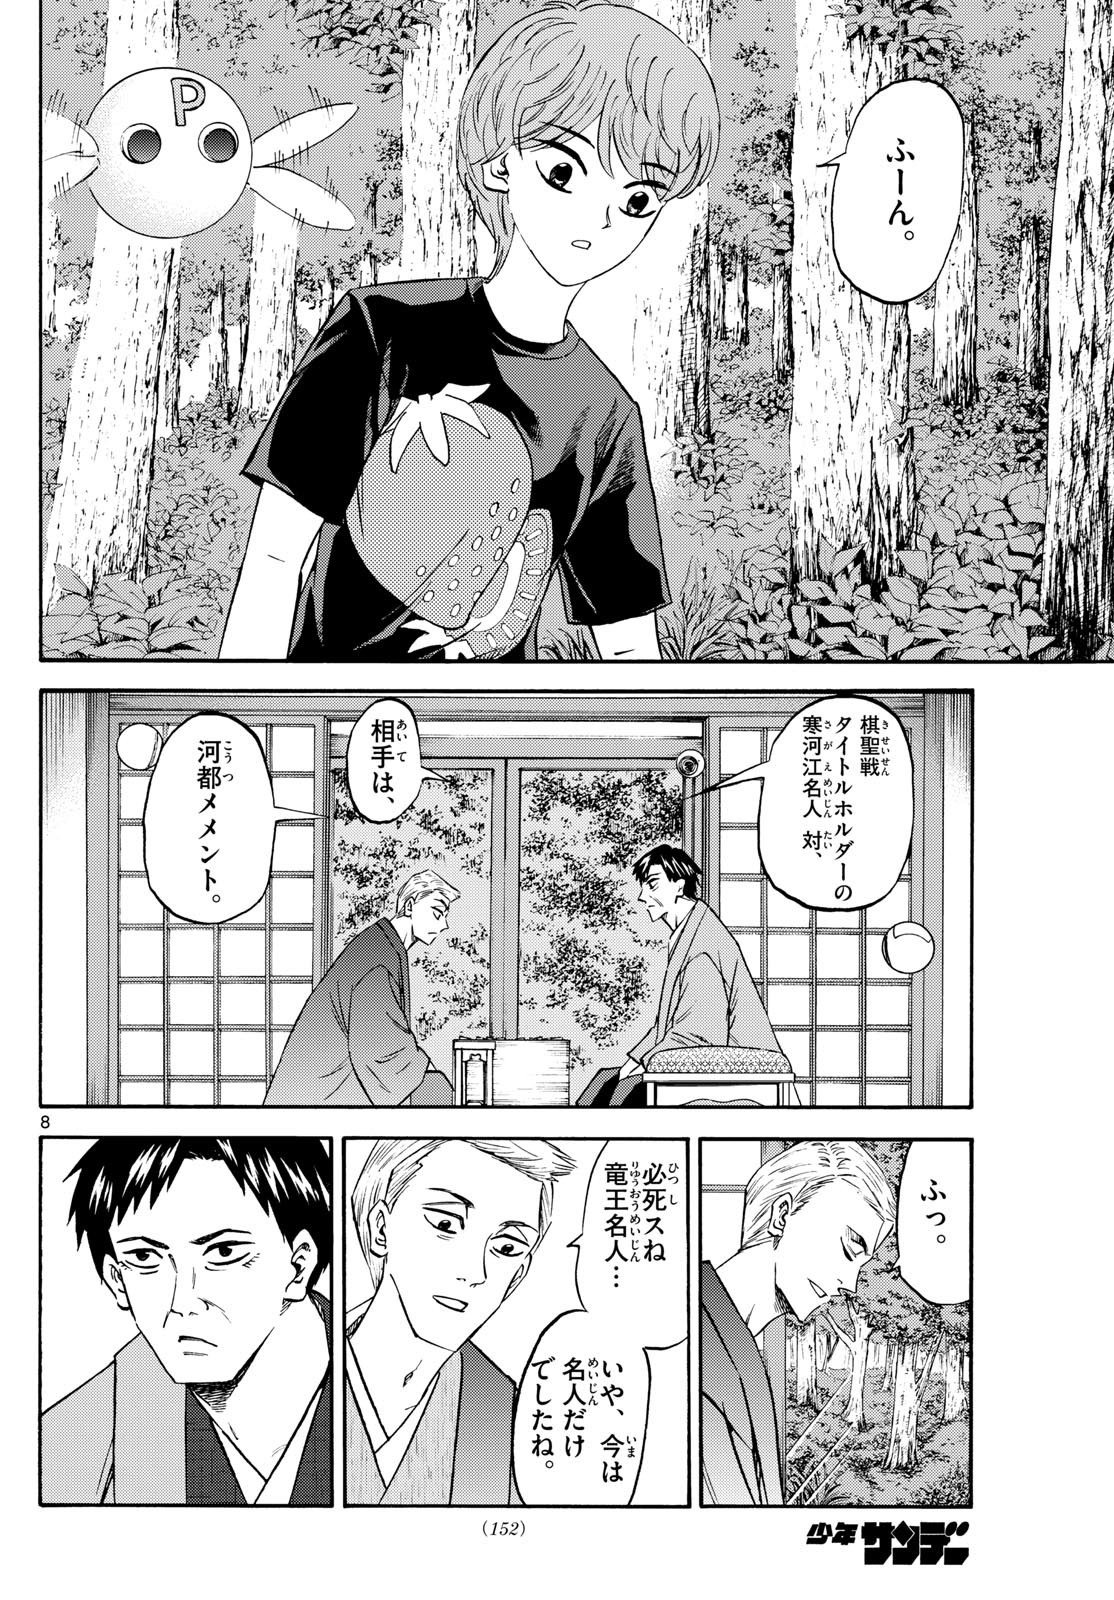 Ryu-to-Ichigo - Chapter 195 - Page 8